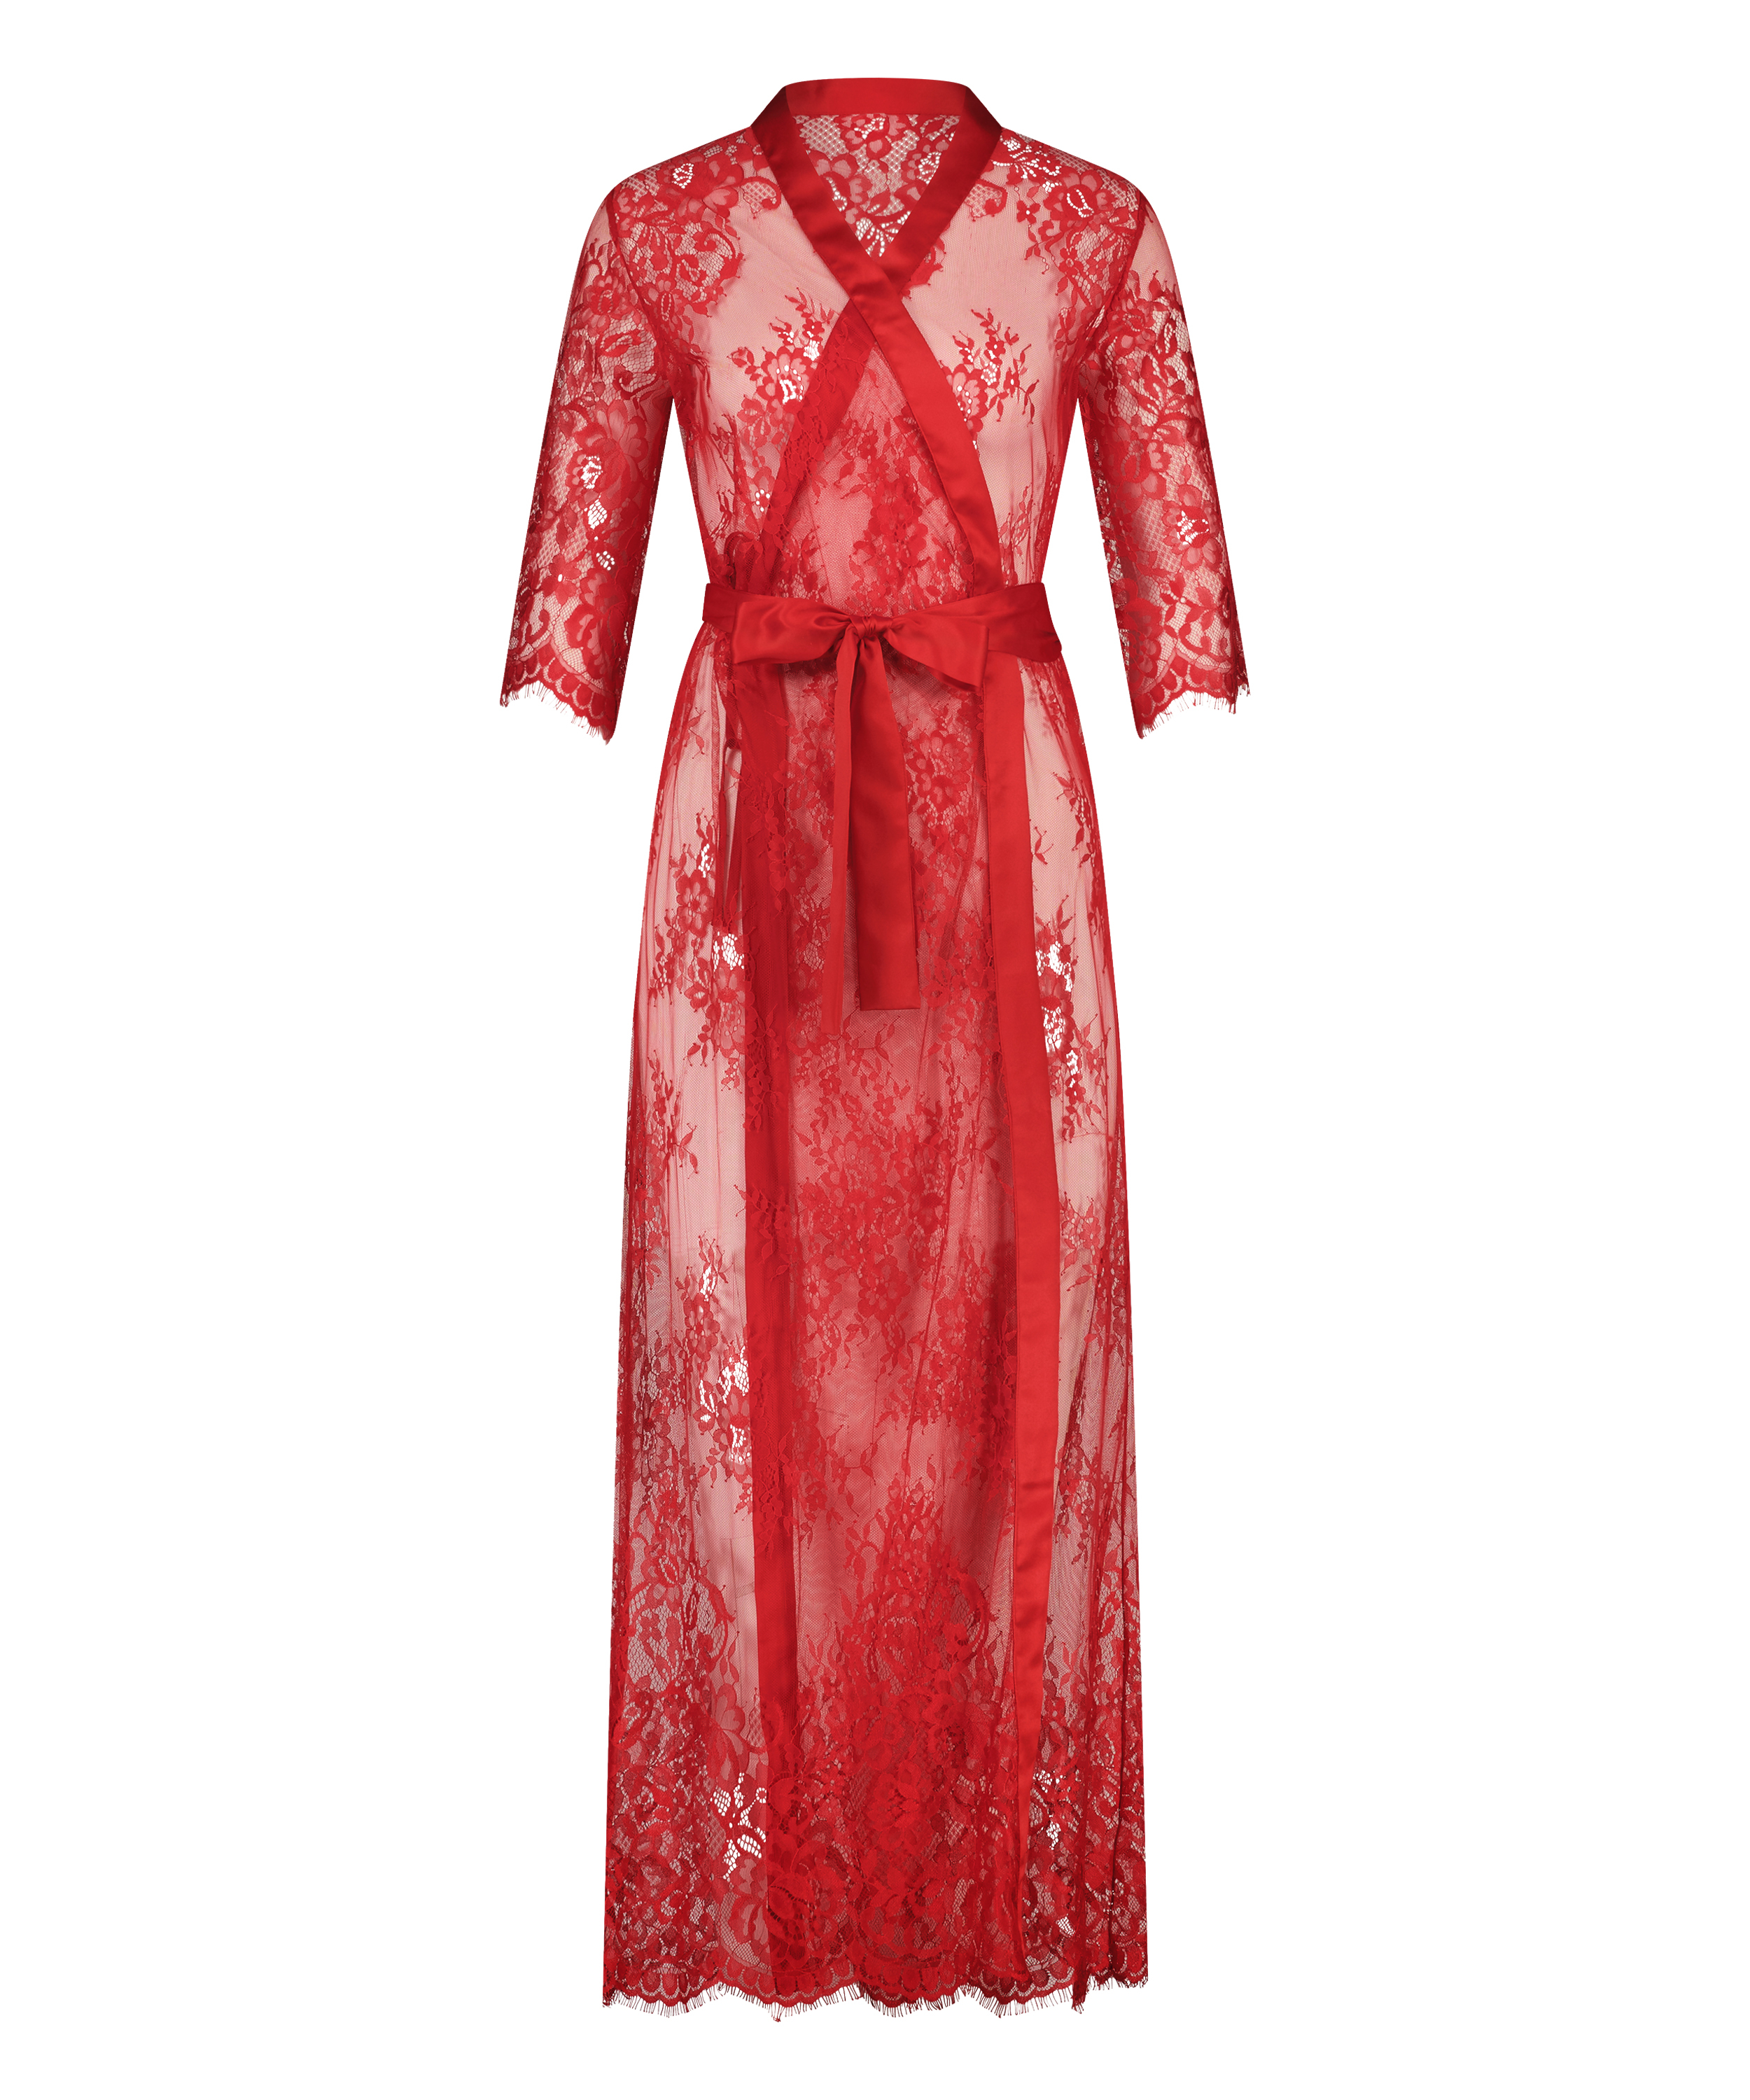 Kimono Allover Lace pour €57.99 - Tous les vêtements de nuit - Hunkemöller